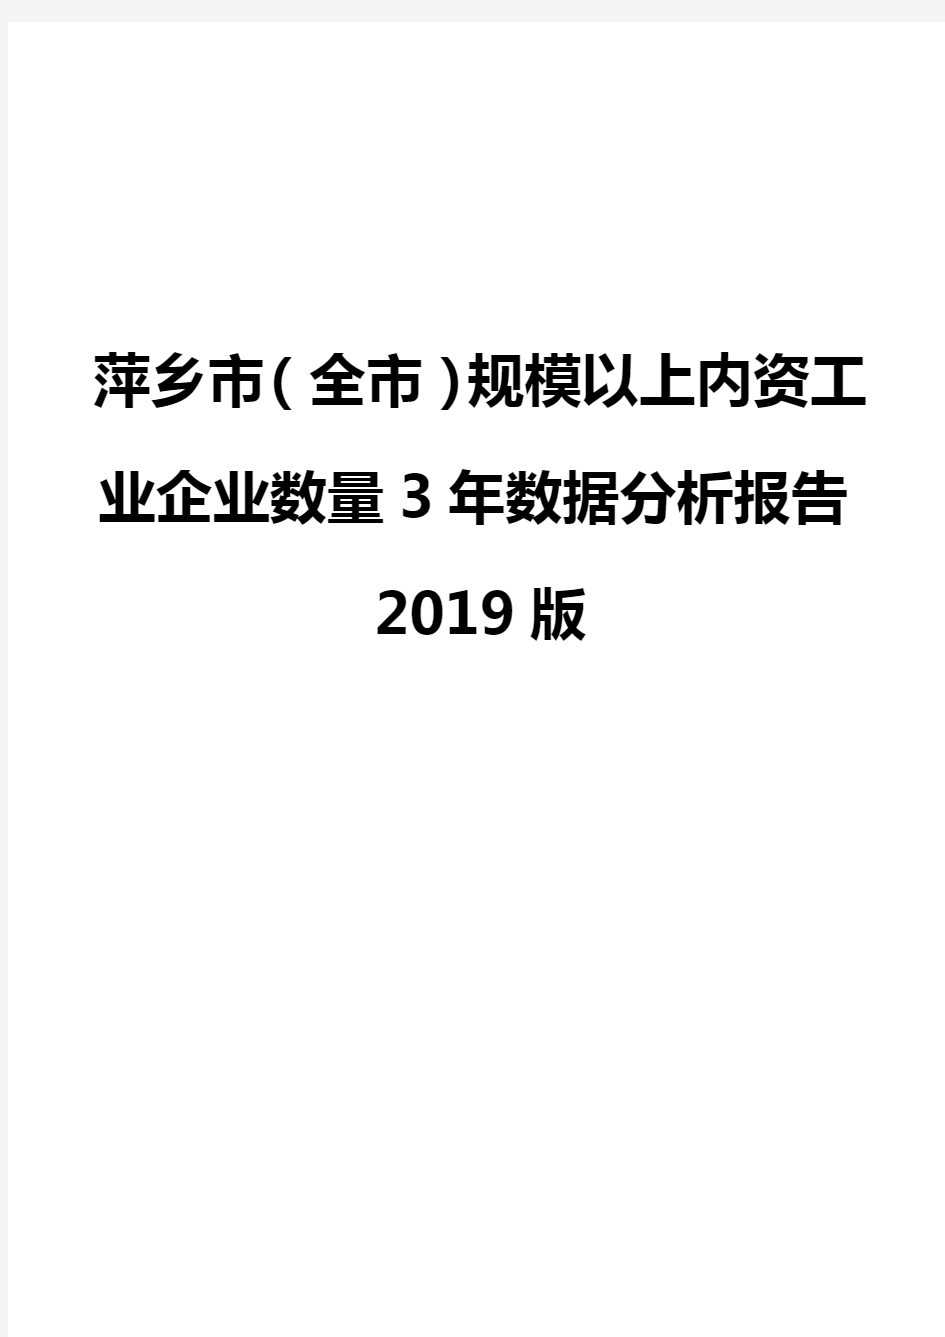 萍乡市(全市)规模以上内资工业企业数量3年数据分析报告2019版